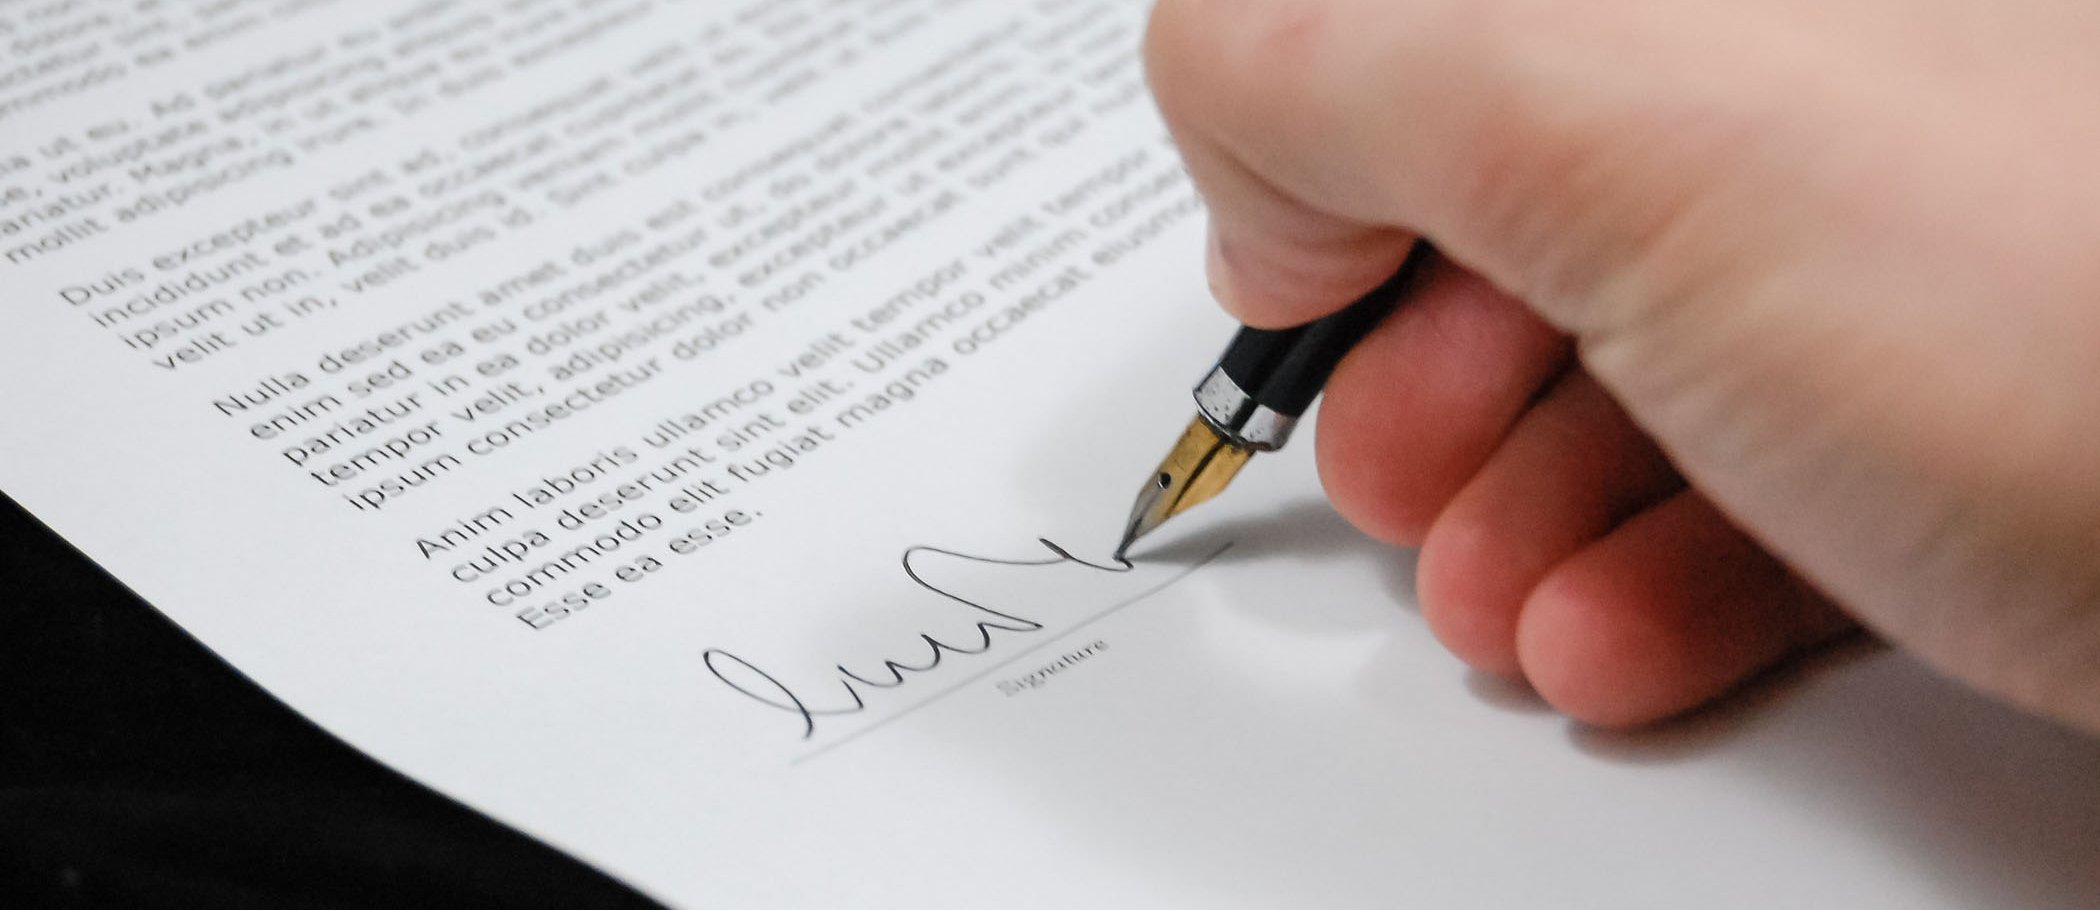 Una persona firmando un documento con una pluma estilográfica